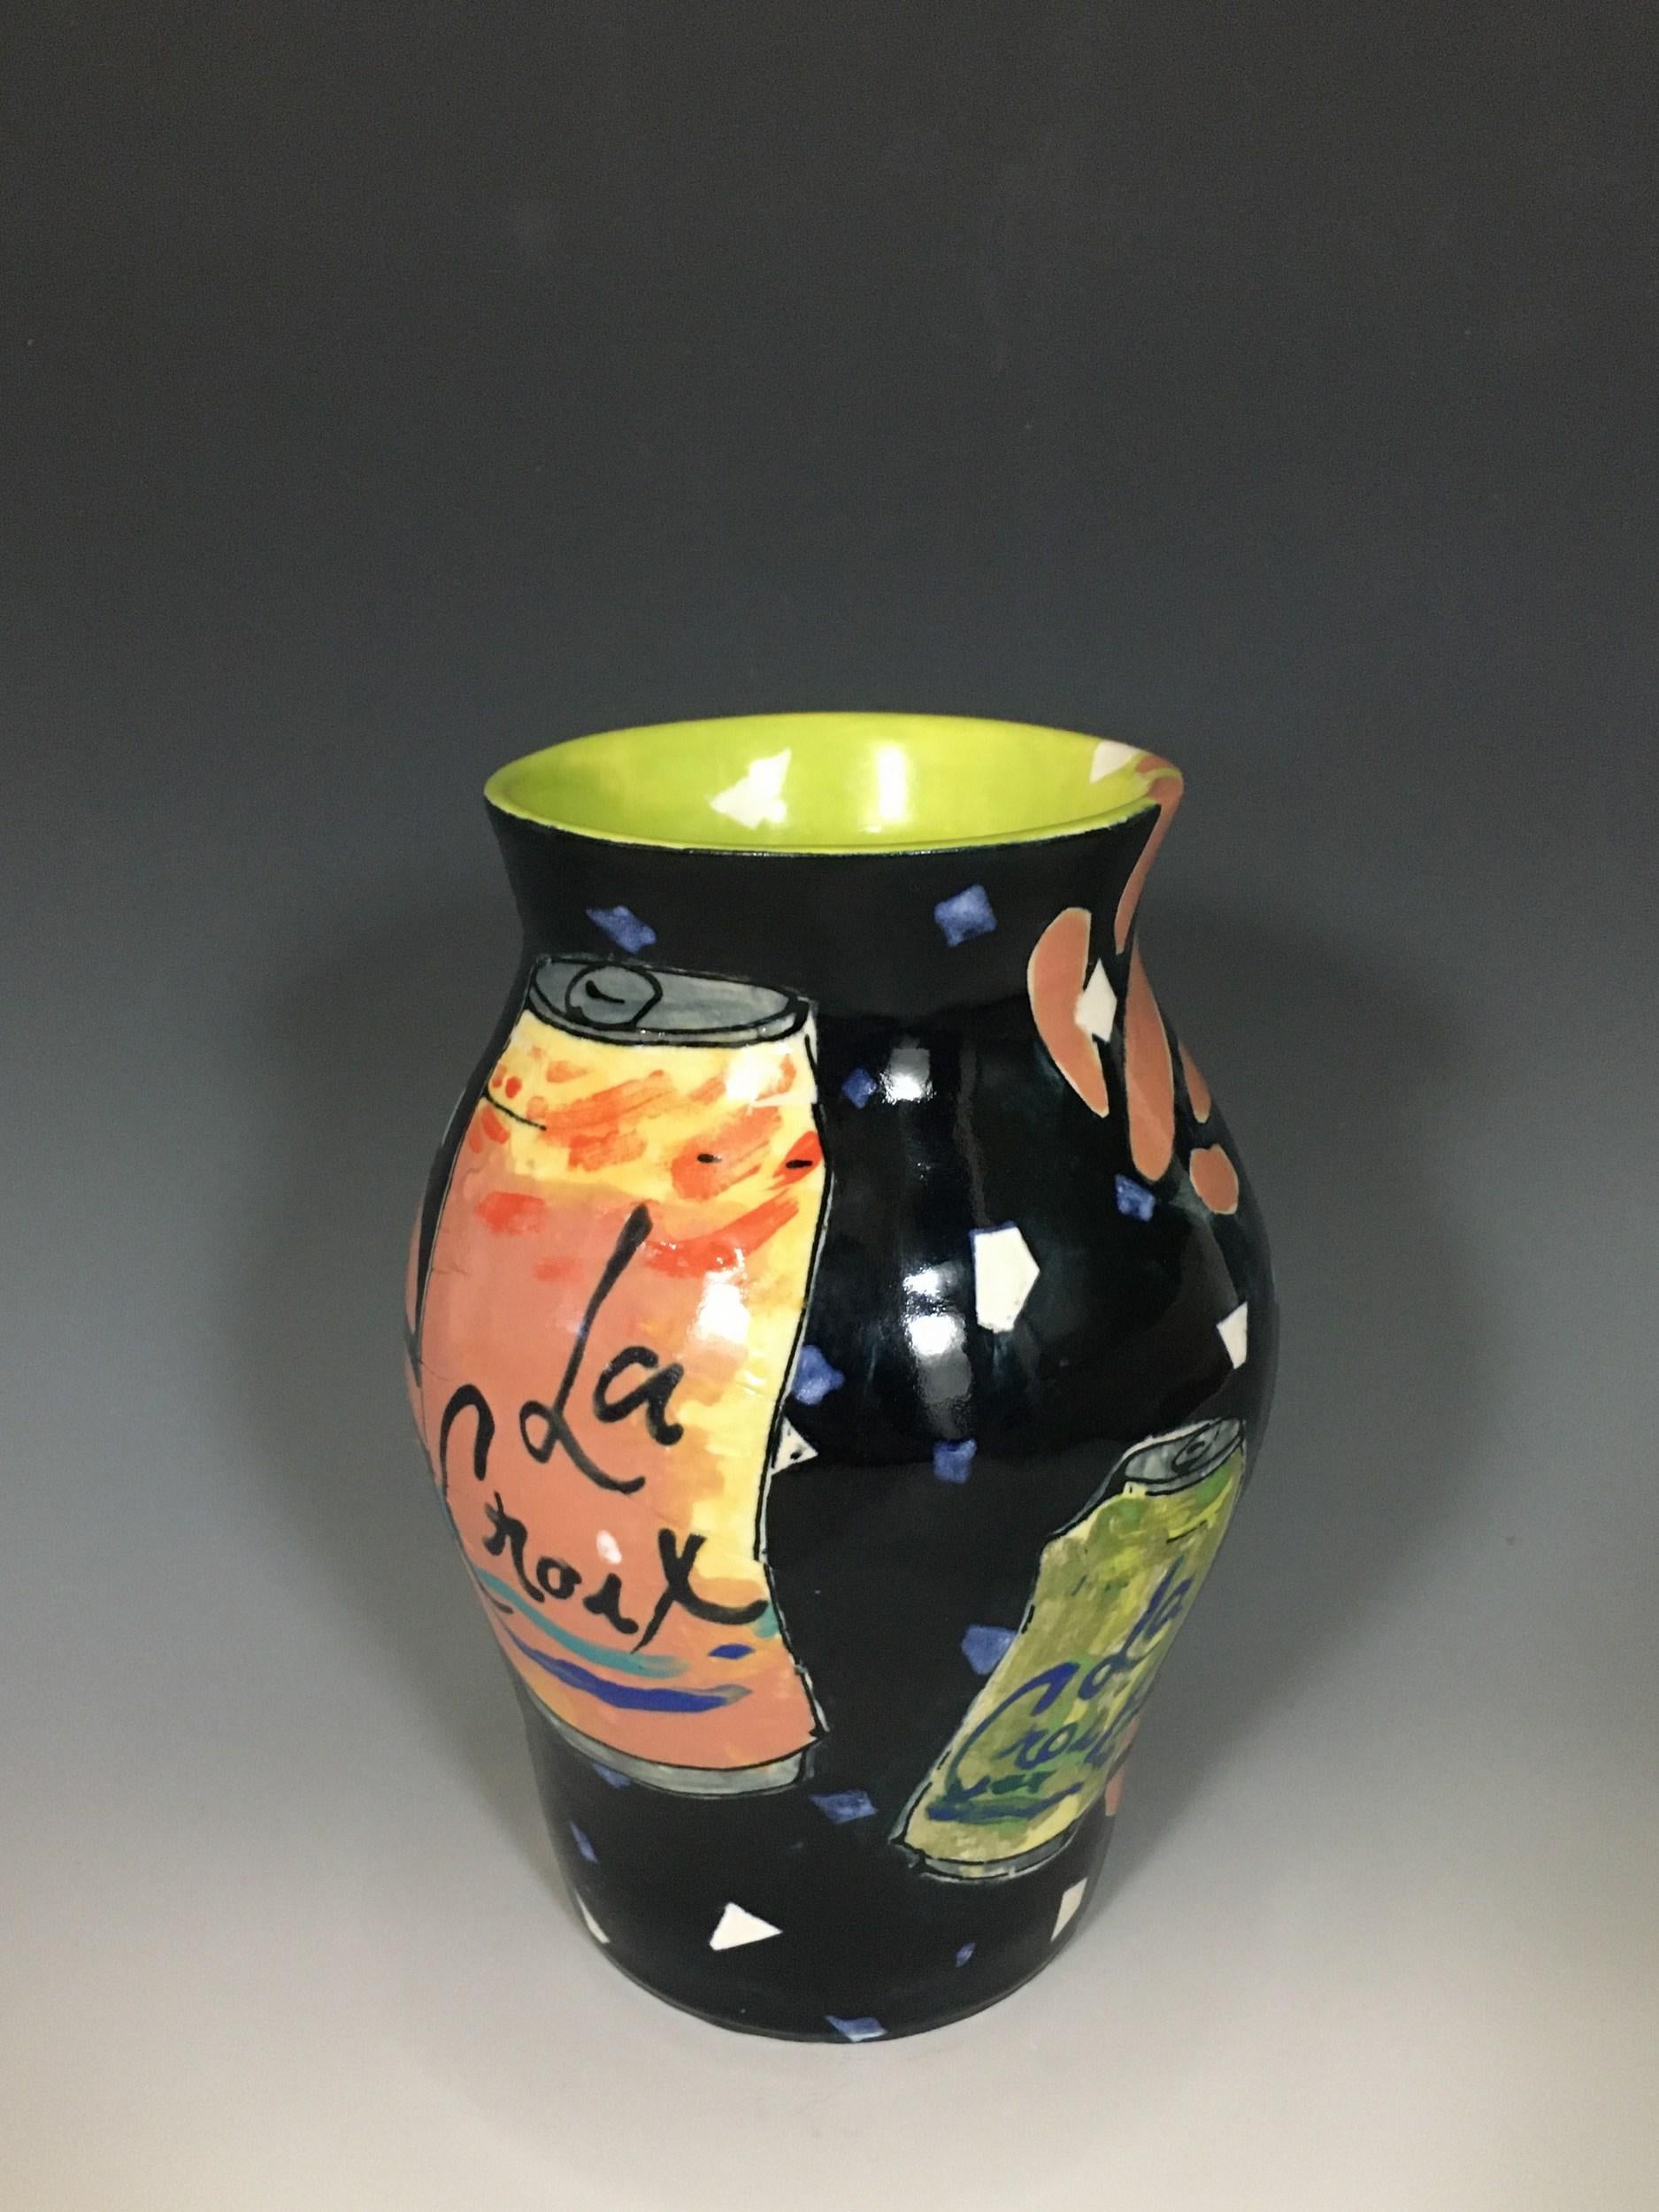 LaCroix Jar - Sculpture by Rachel Hubbard Kline